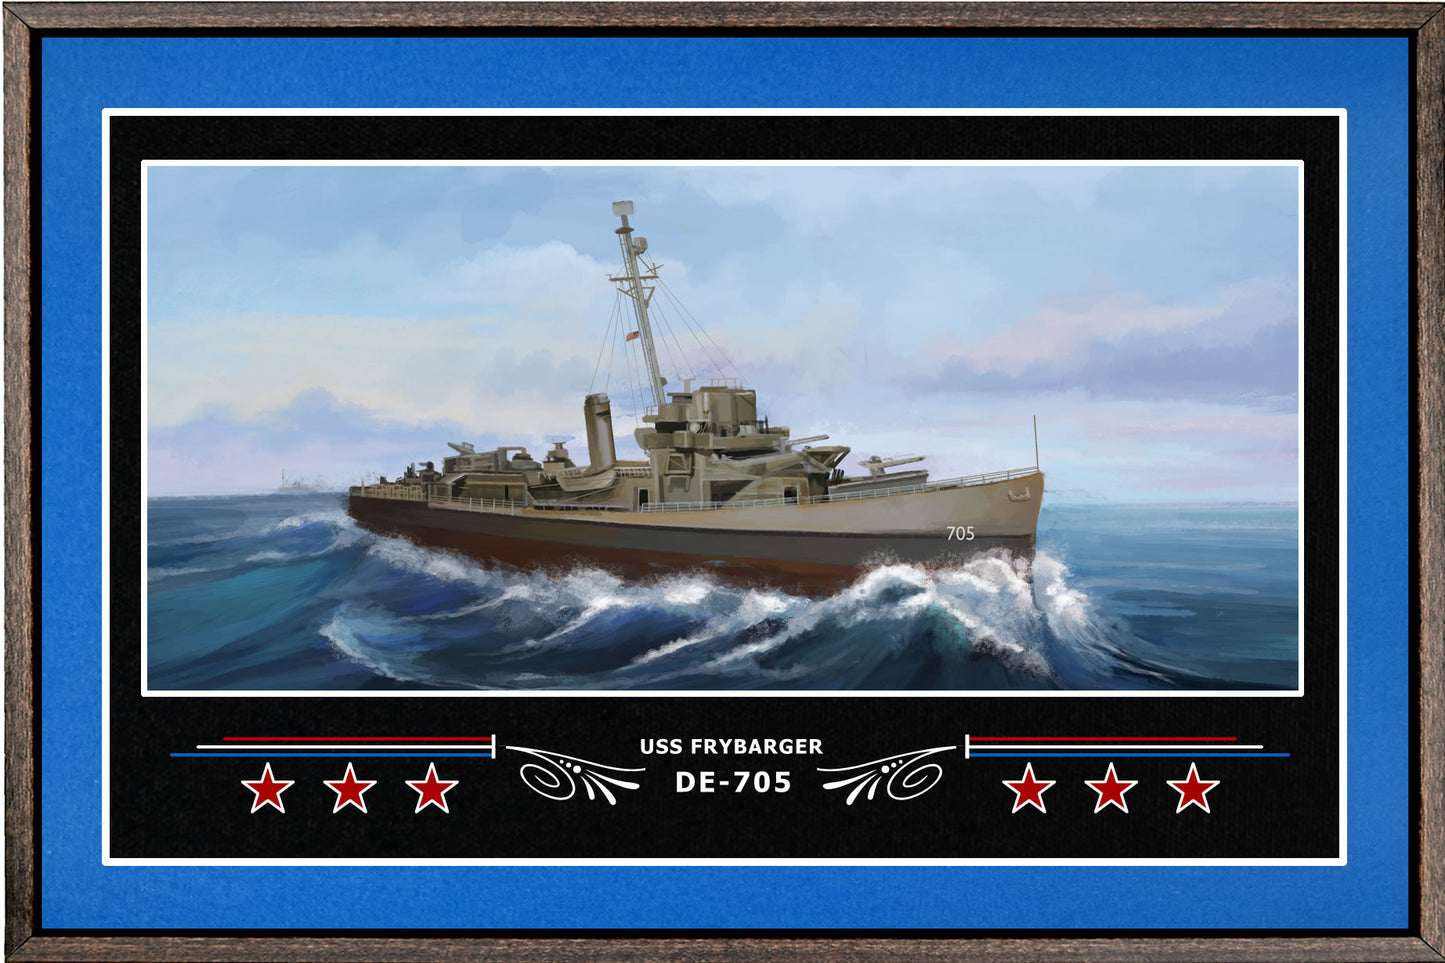 USS FRYBARGER DE 705 BOX FRAMED CANVAS ART BLUE